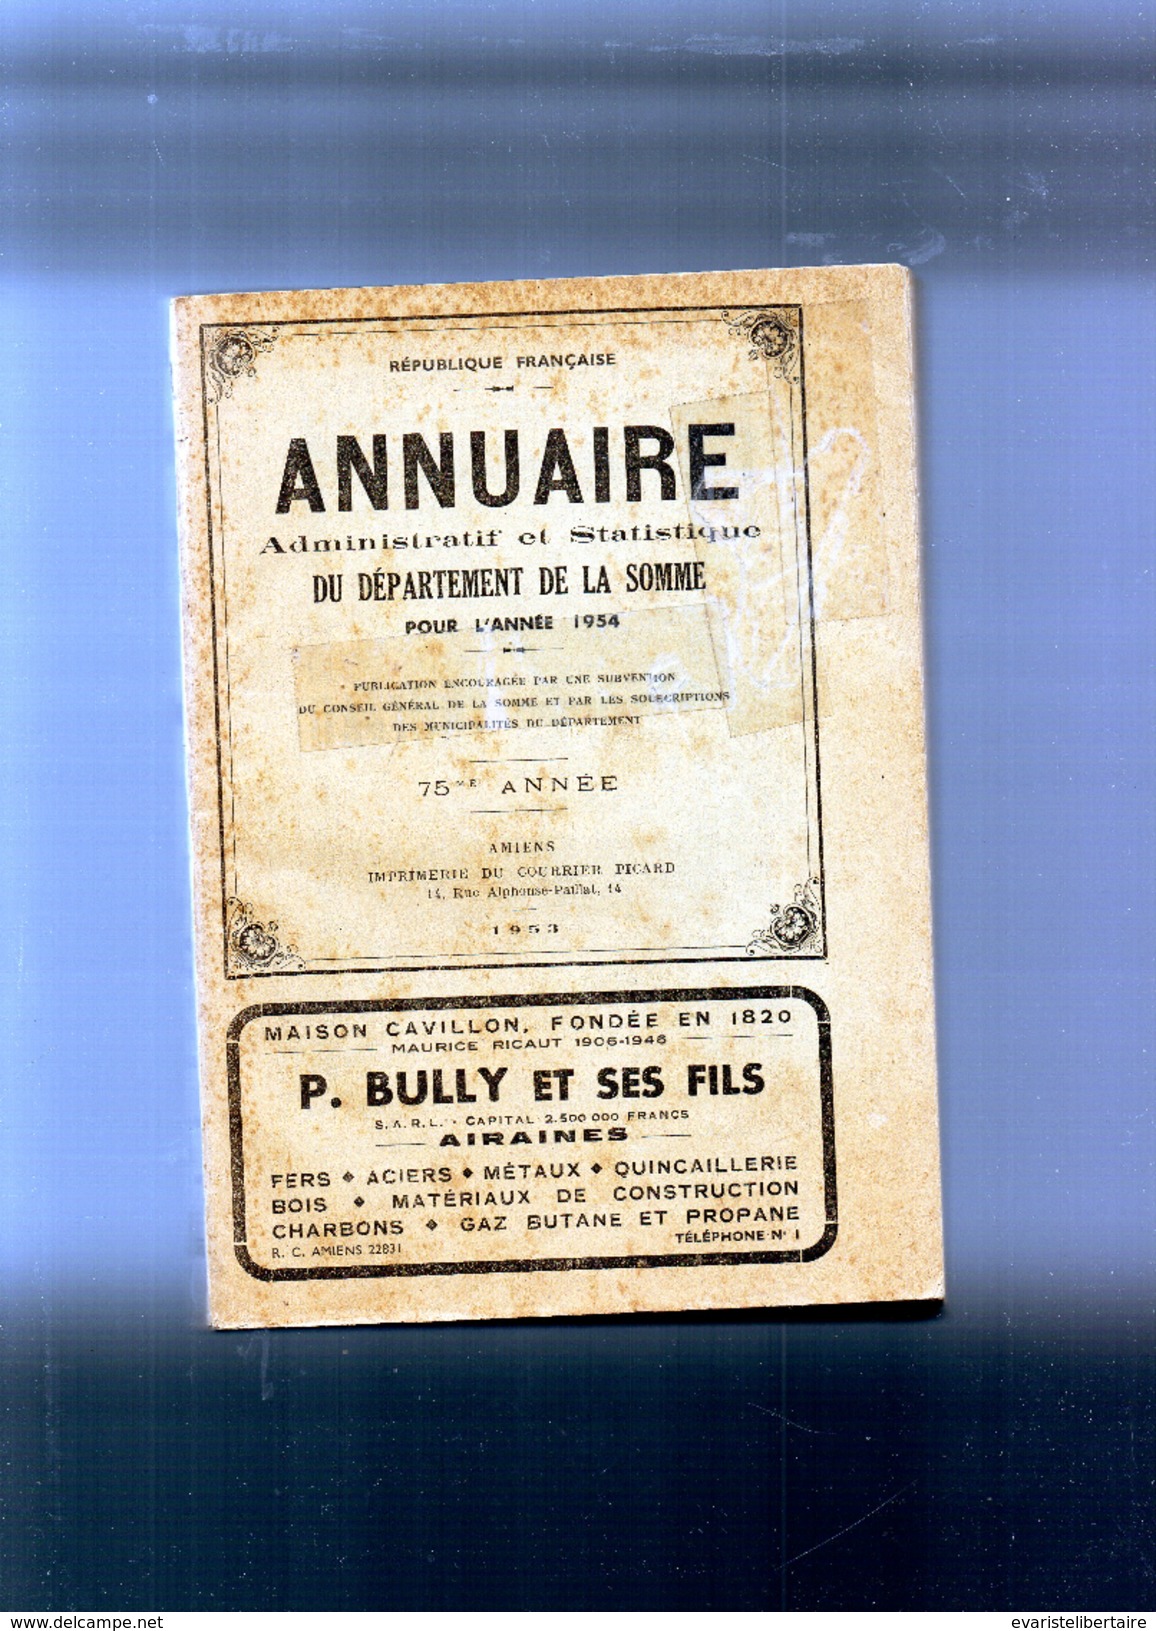 Annuaire Administratif Et Statistique Du Département De La SOMME Pour L'année 1954 - Picardie - Nord-Pas-de-Calais